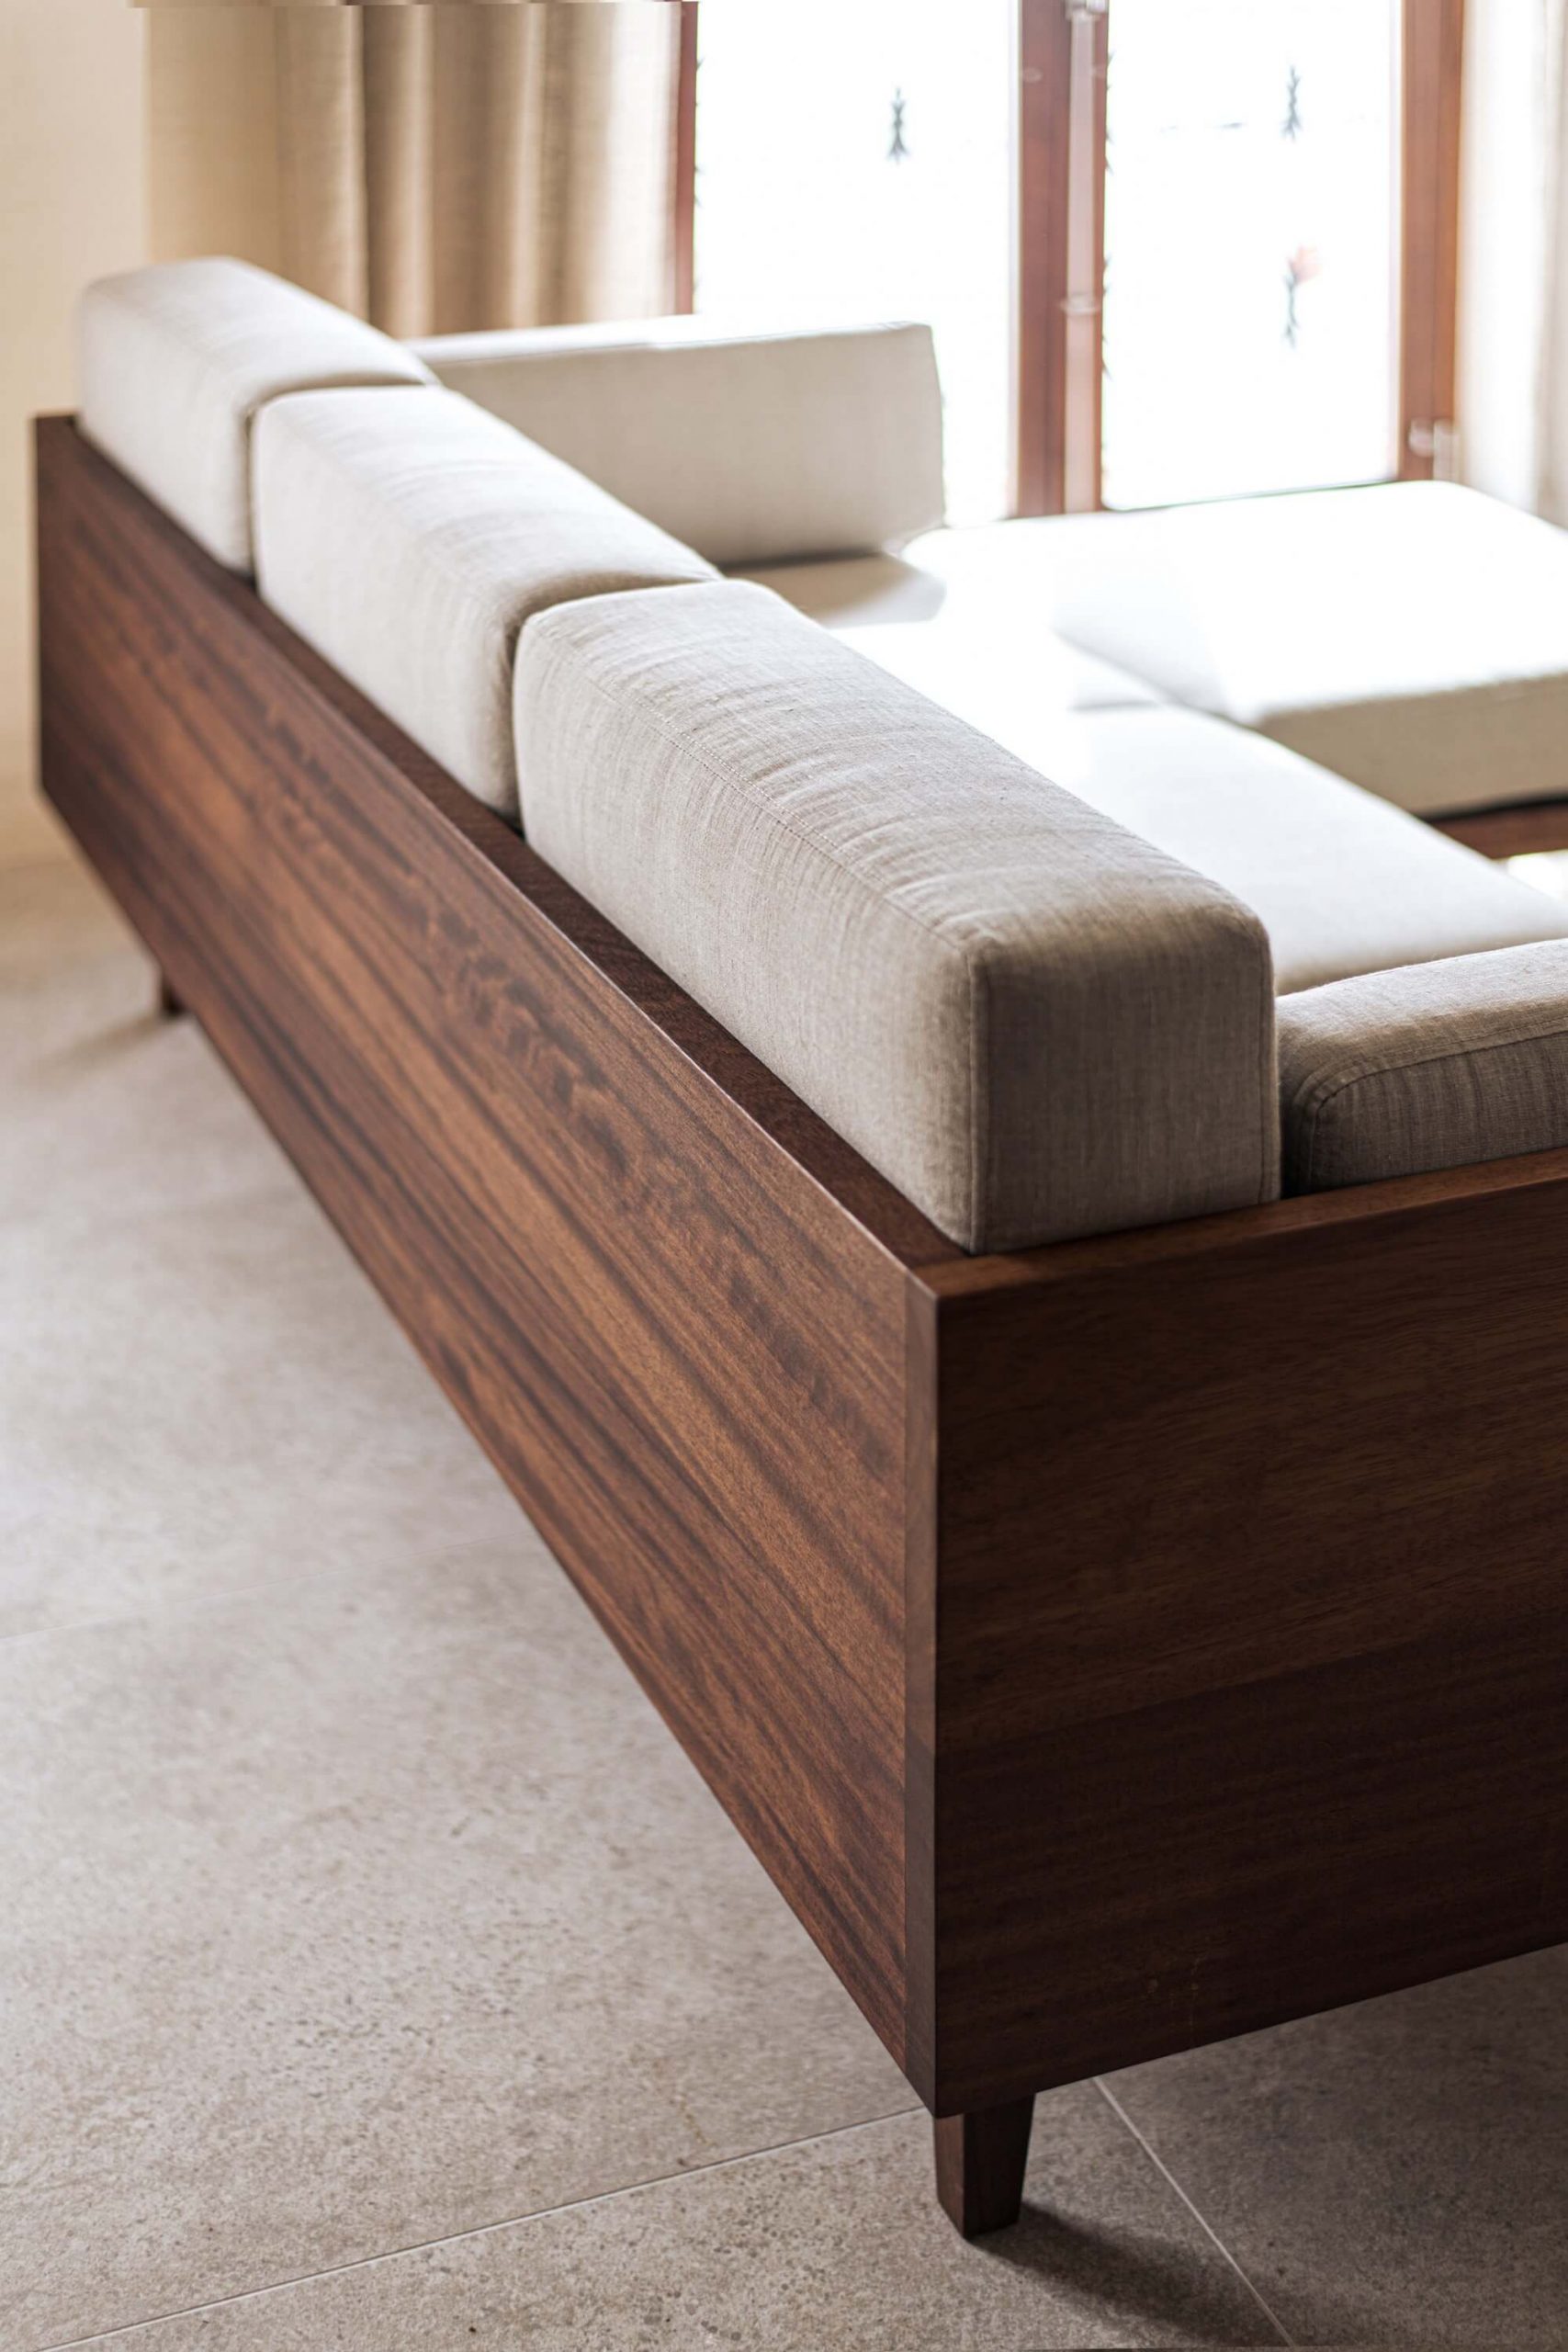 Sofa gỗ đẹp và đơn giản, phù hợp các thiết kế trẻ